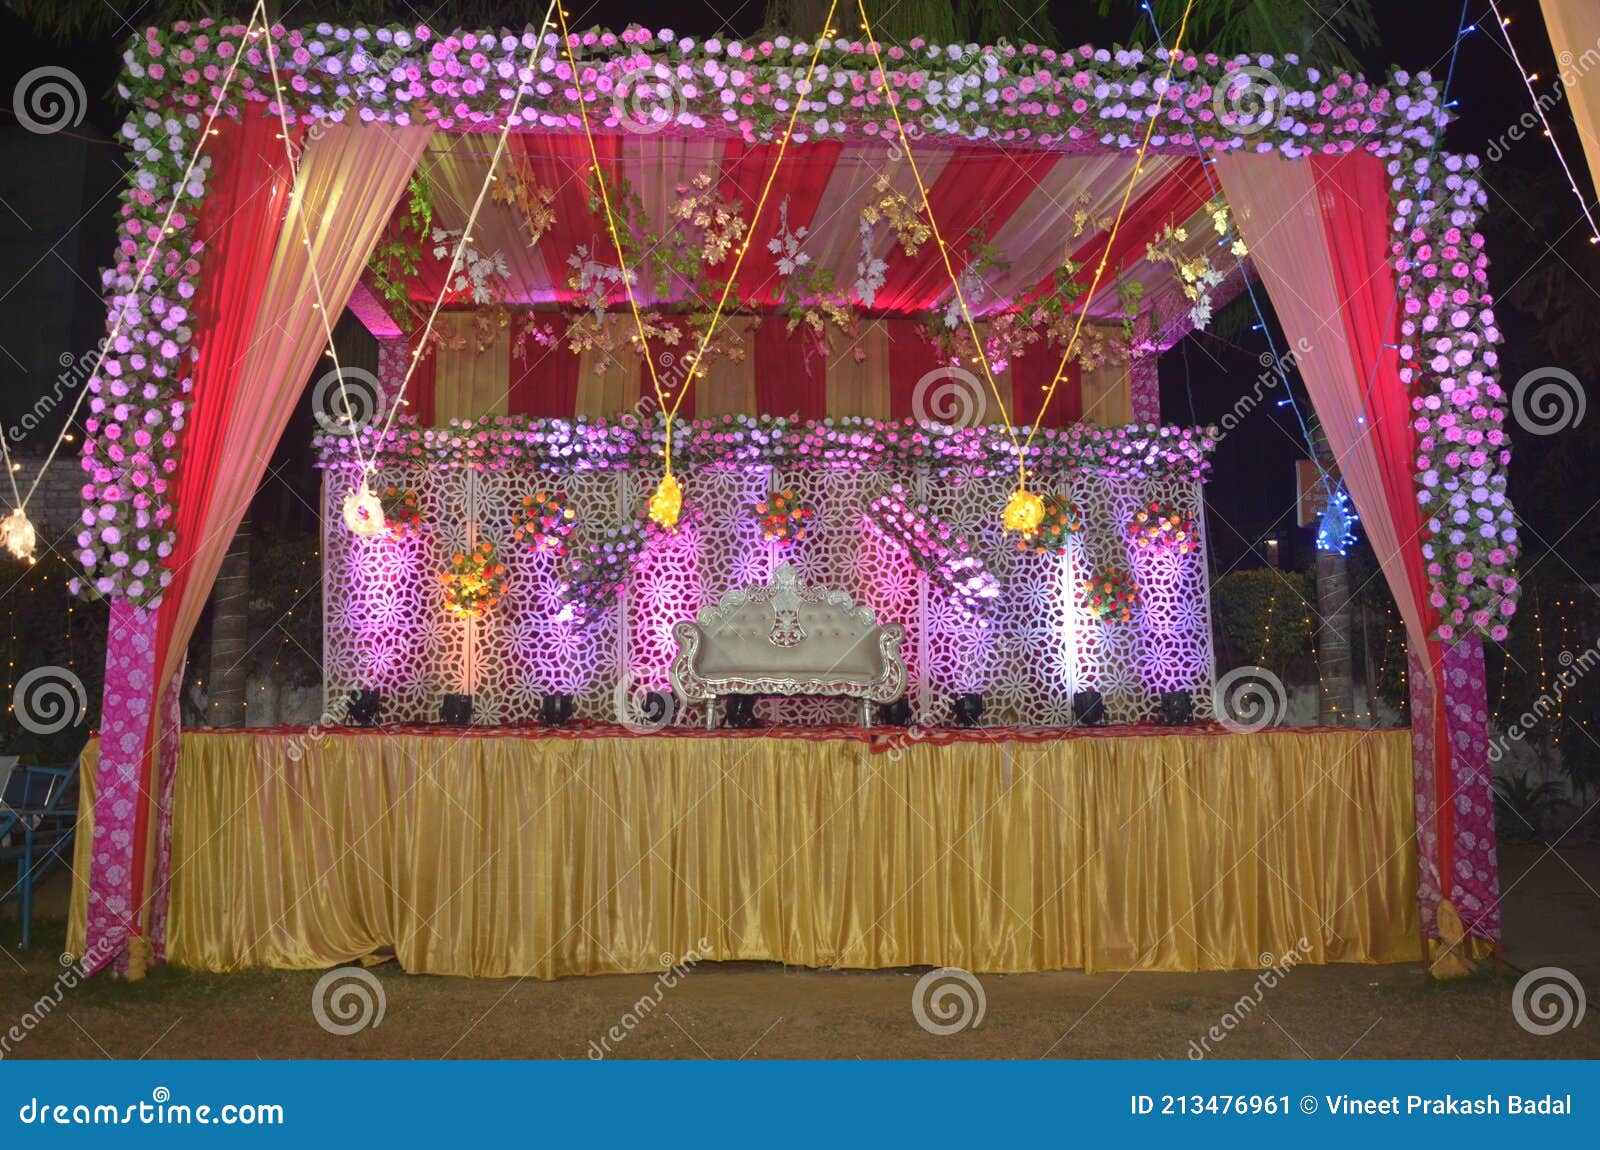 voorzien zingen verzameling Indiase bruiloft decoratie stock afbeelding. Image of roze - 213476961